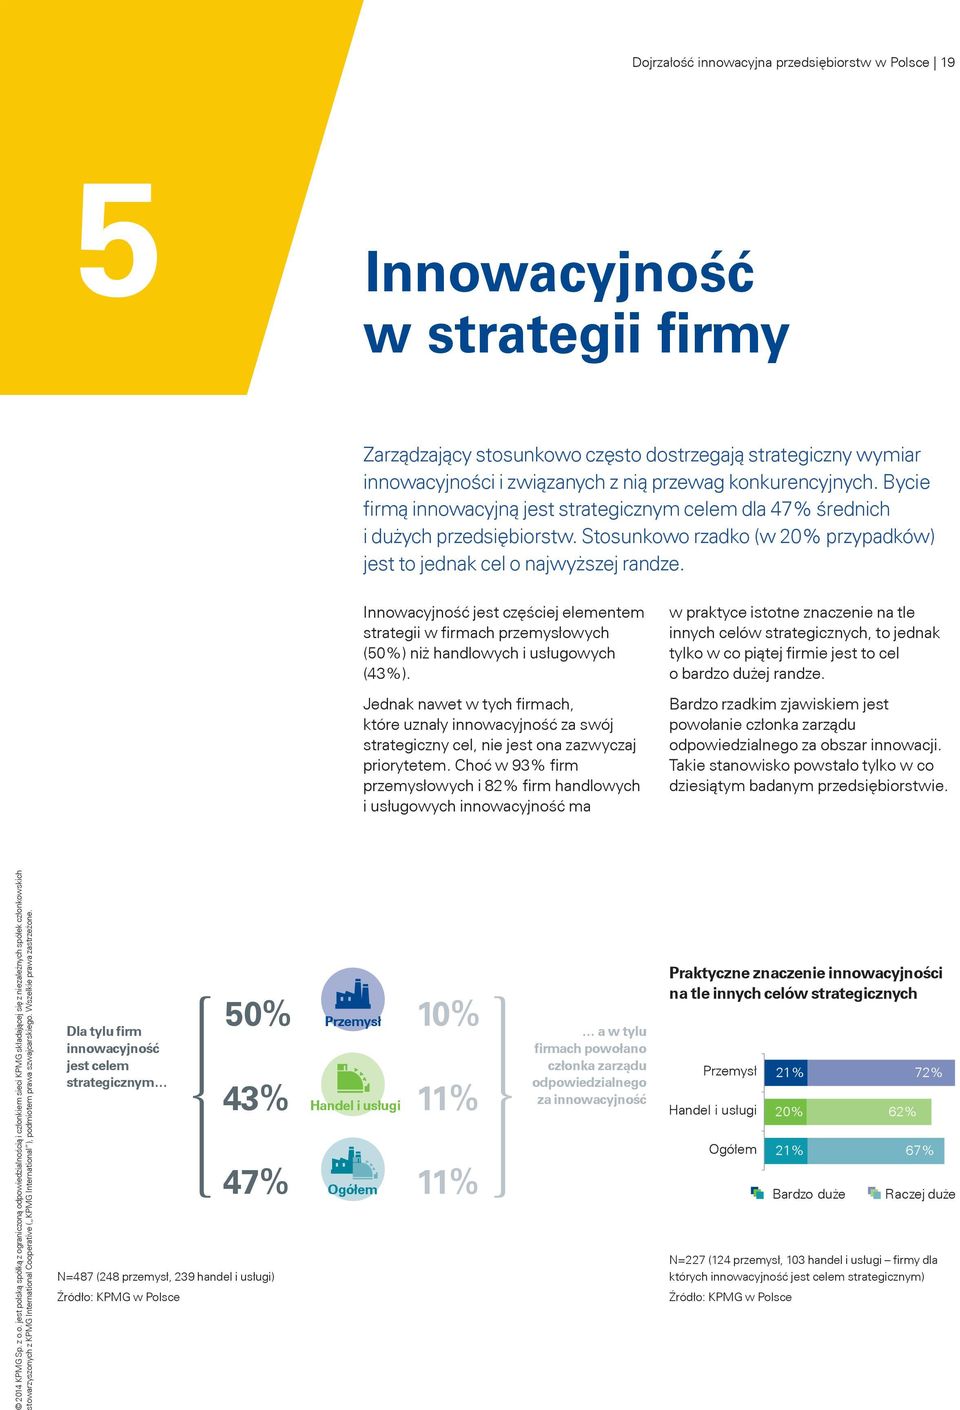 Innowacyjność jest częściej elementem strategii w firmach przemysłowych (50%) niż handlowych i usługowych (43%).